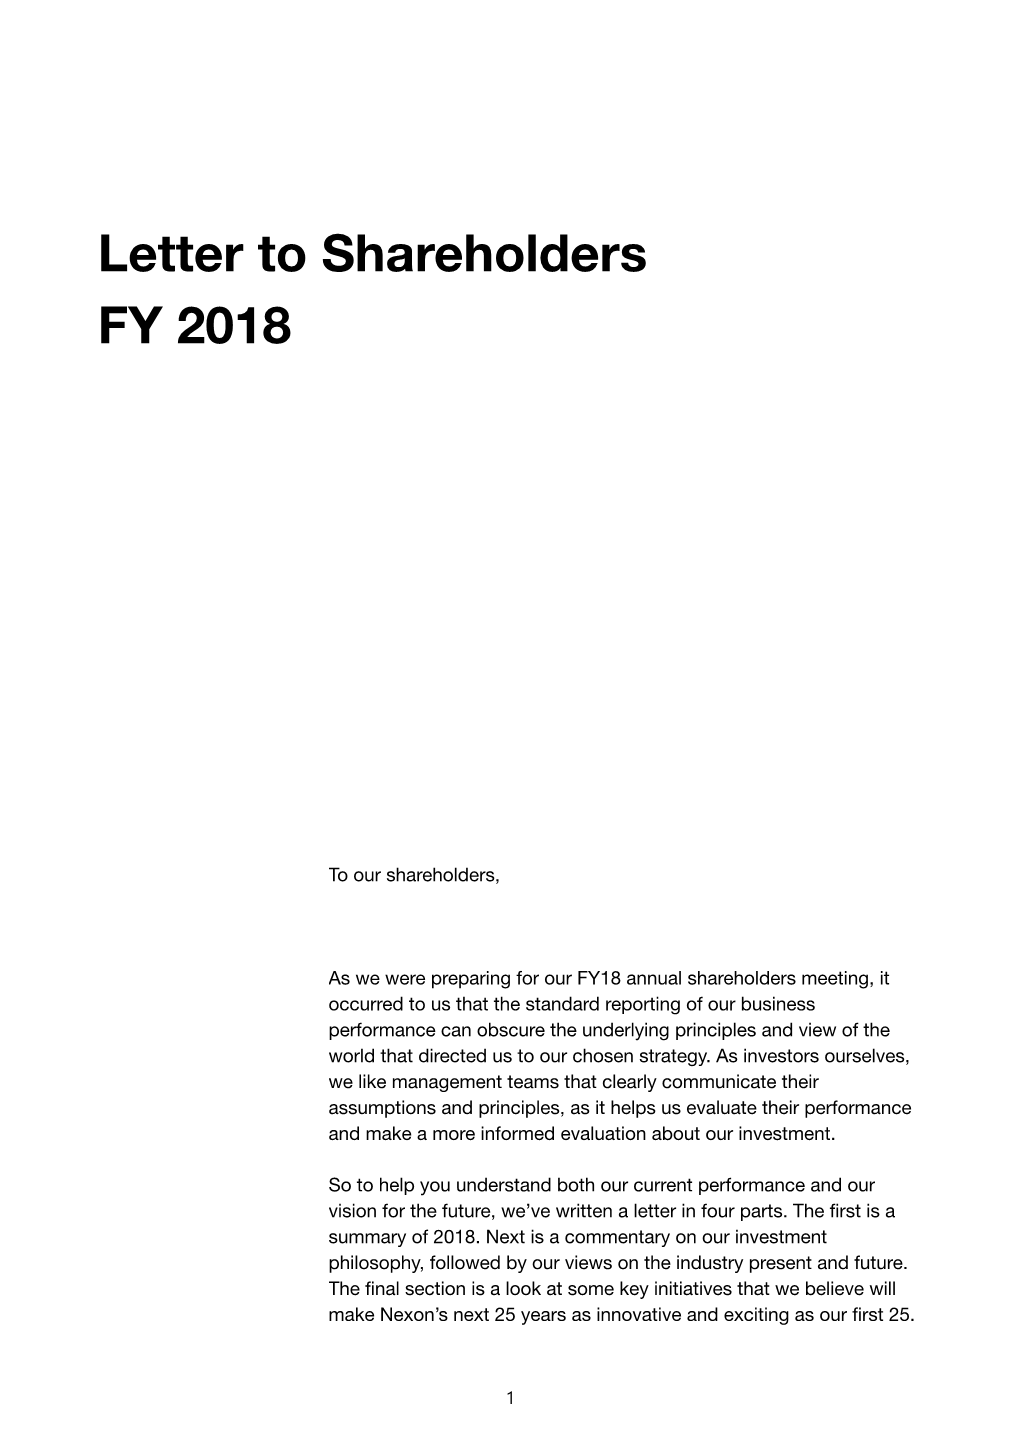 Letter to Shareholders FY 2018